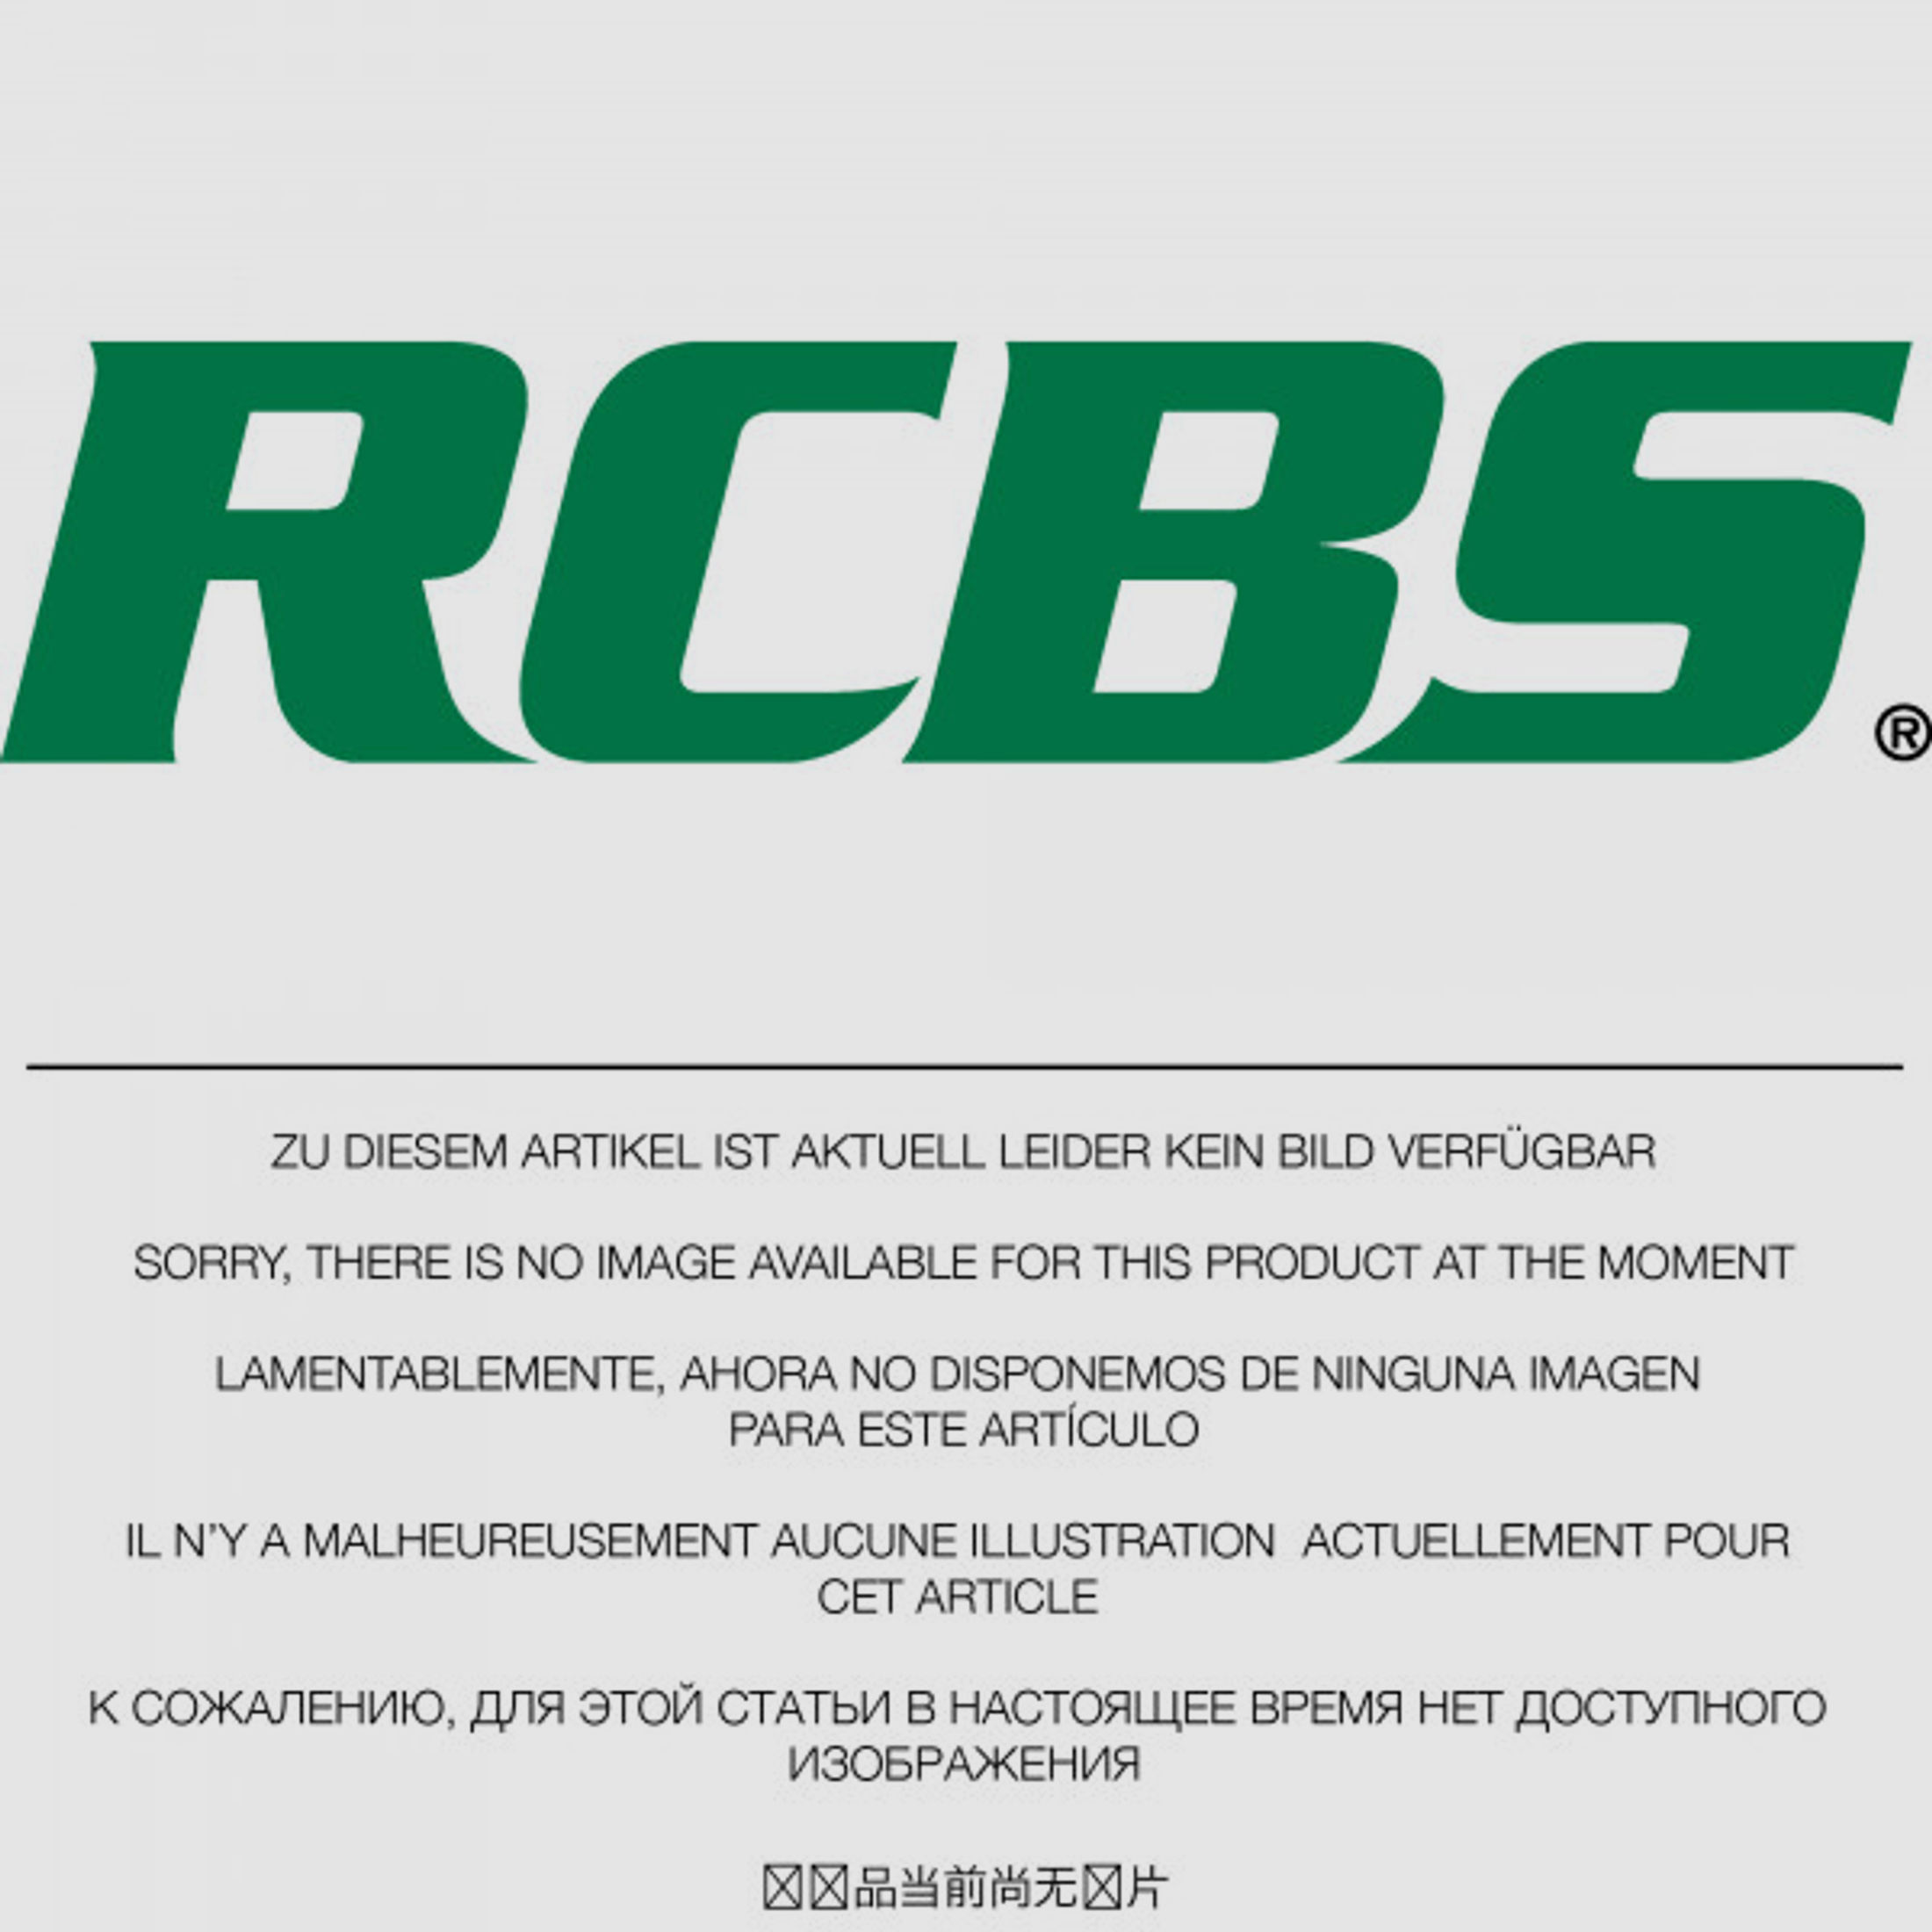 RCBS Lube-A-Matic Top Punch Geschoss Setzstempel Nr. 445 #82543